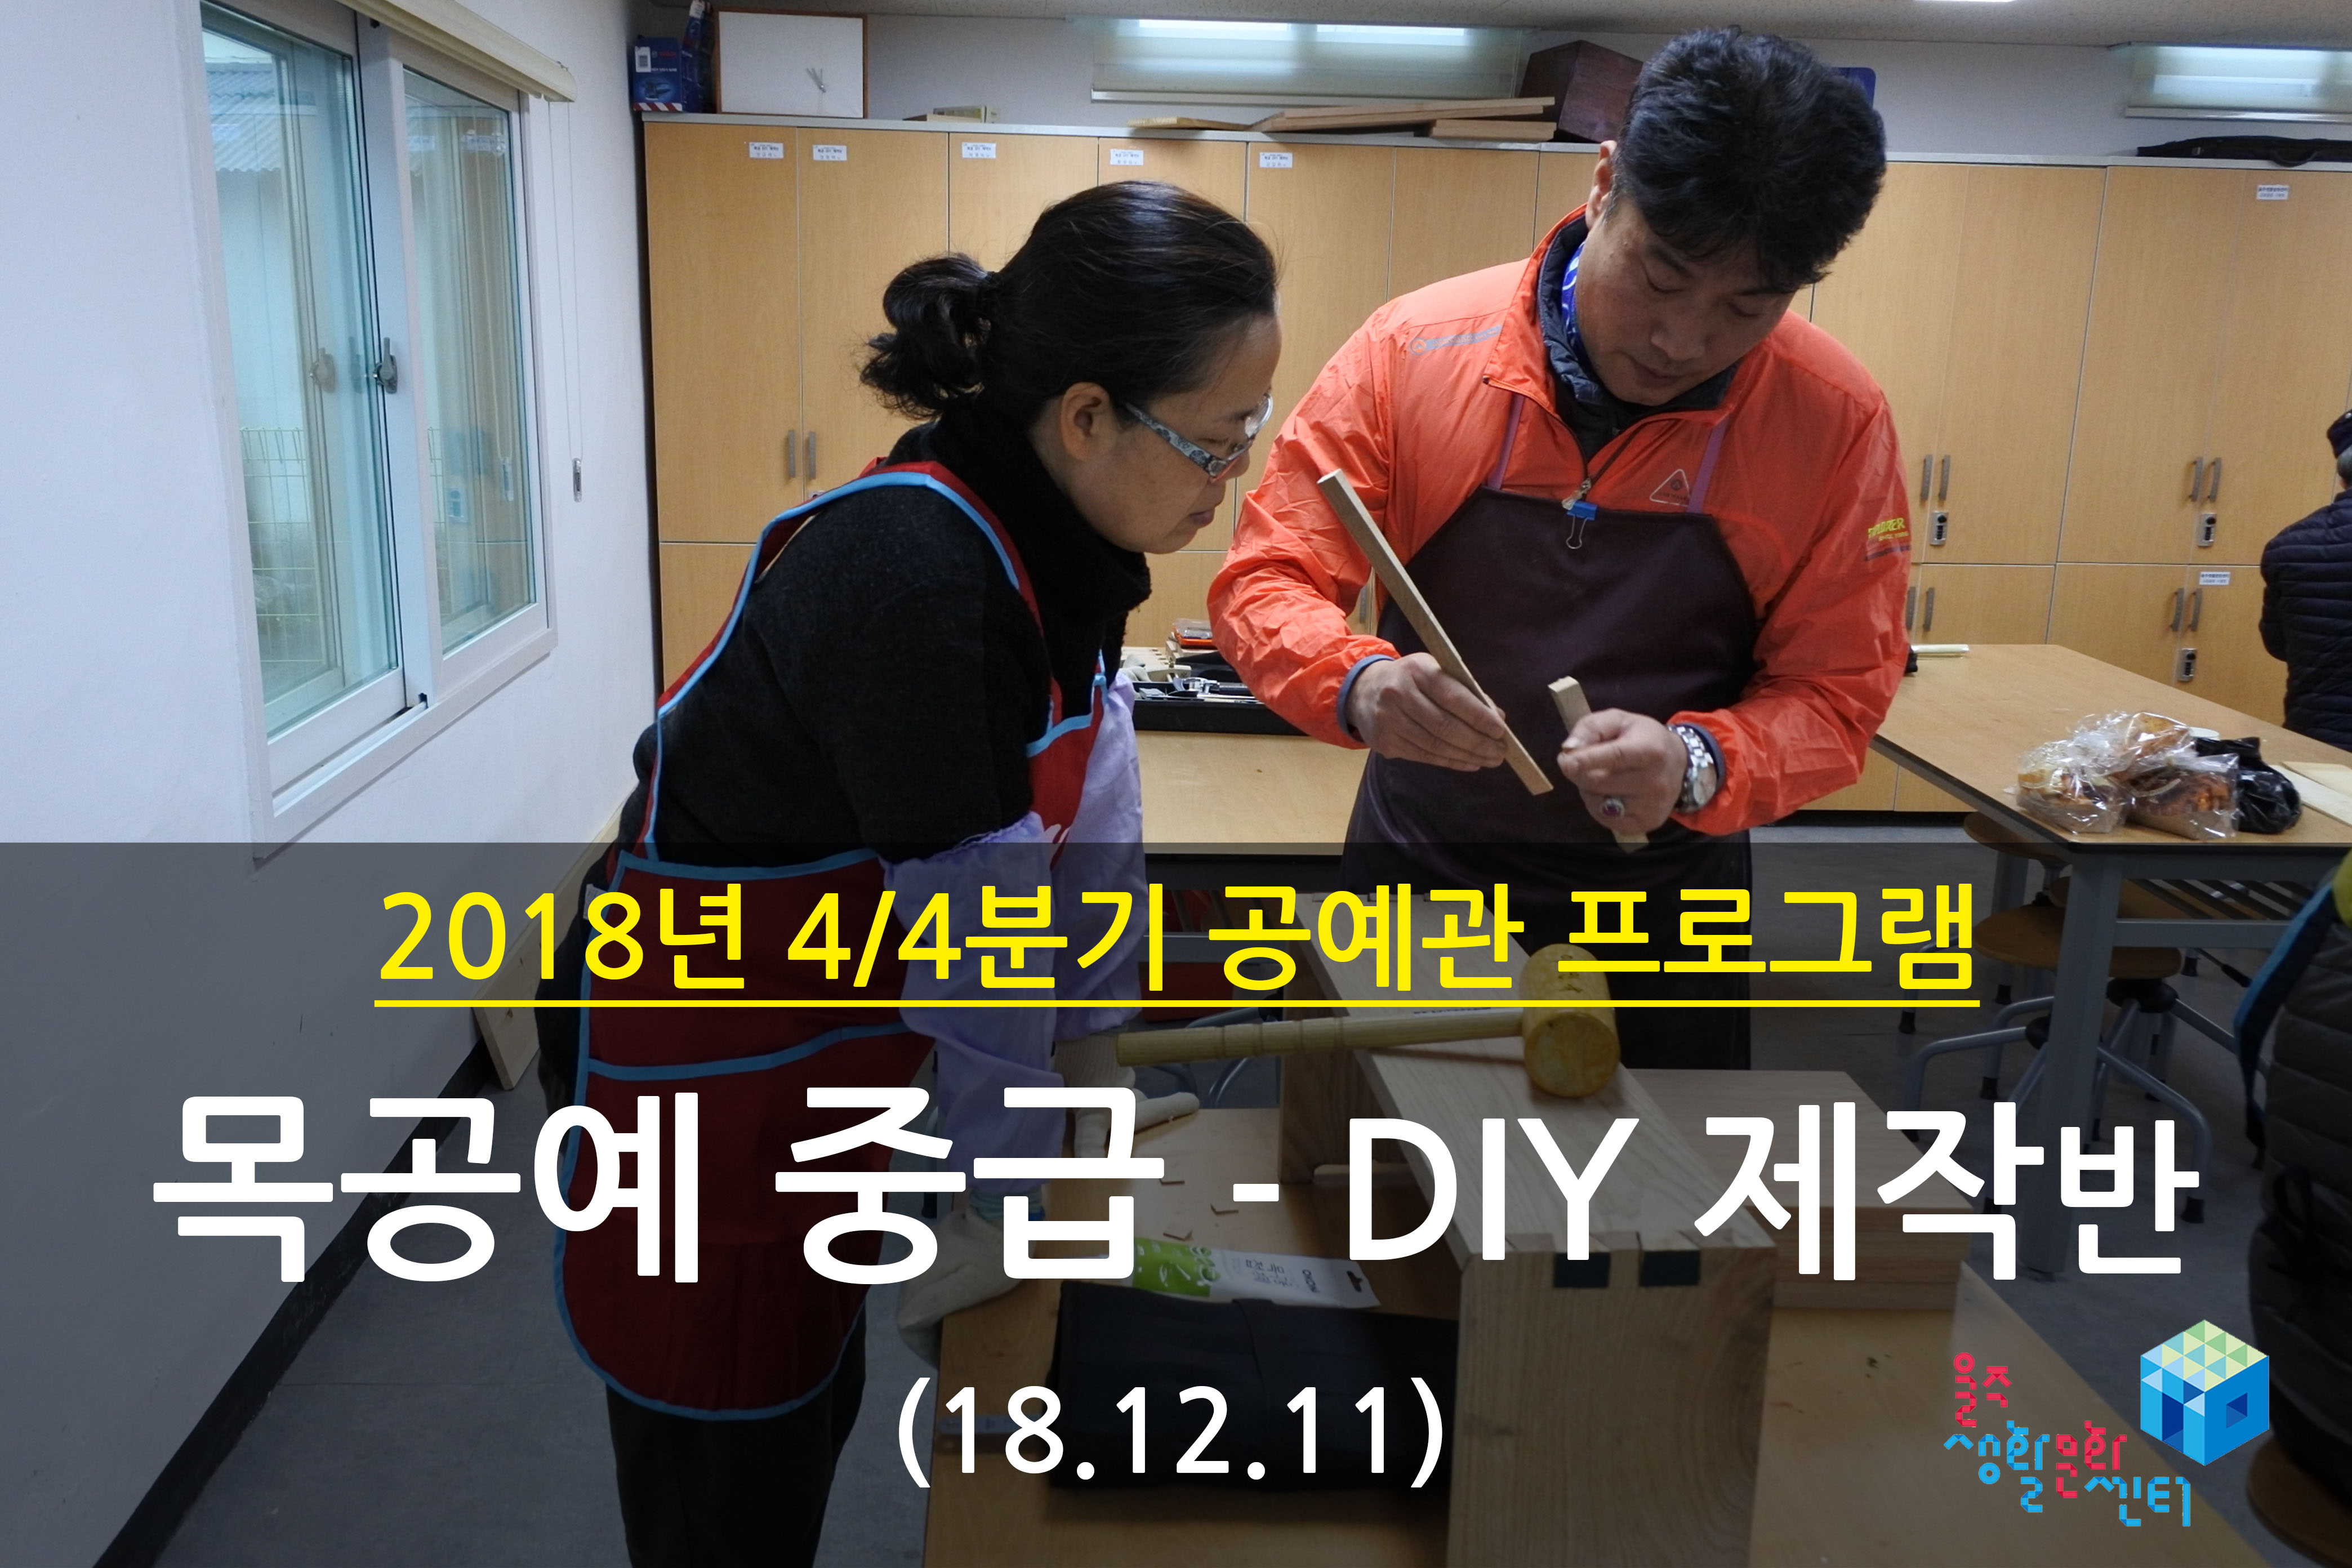 2018.12.11 _ 목공예 중급 - DIY 제작반 _ 4/4분기 10주차 수업